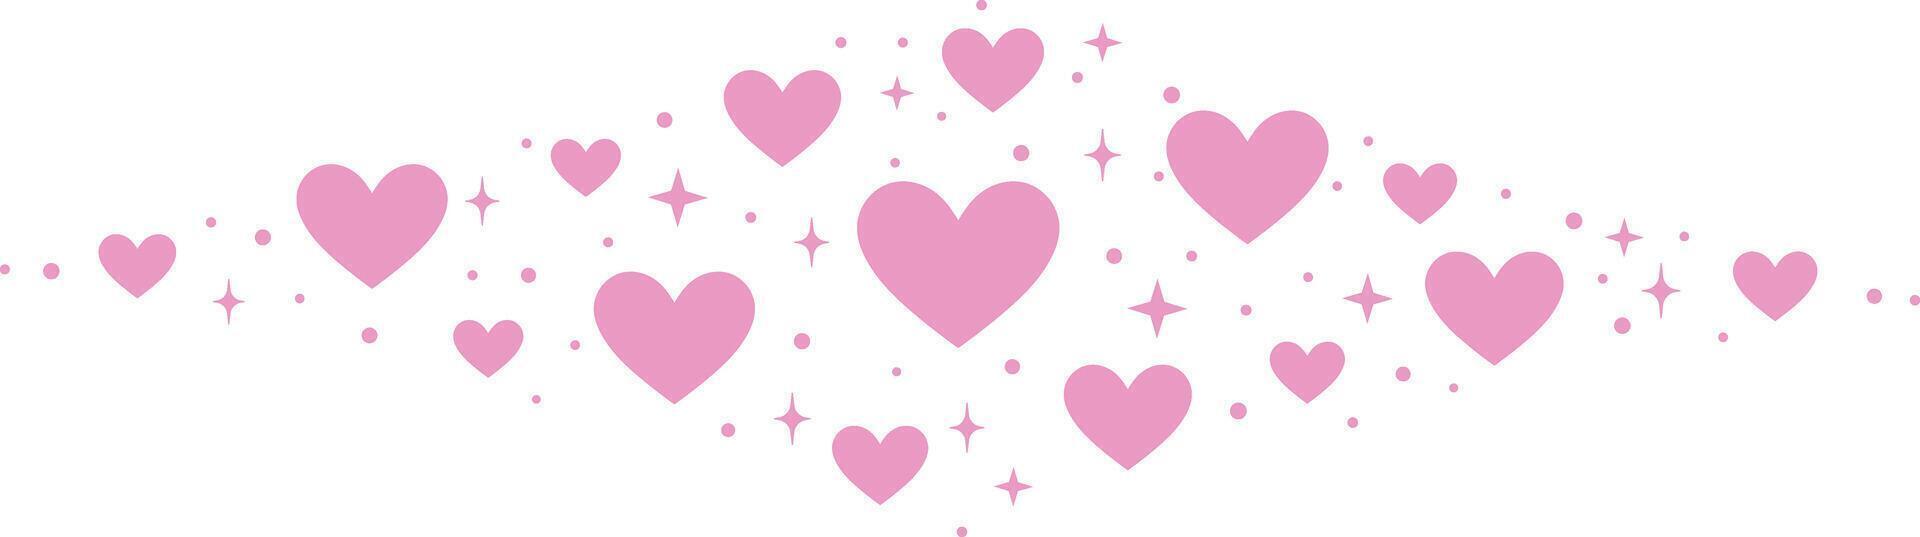 roze hart vector banier illustratie, hand- getrokken schattig decoratief klem kunst element met sterren en harten, geïsoleerd